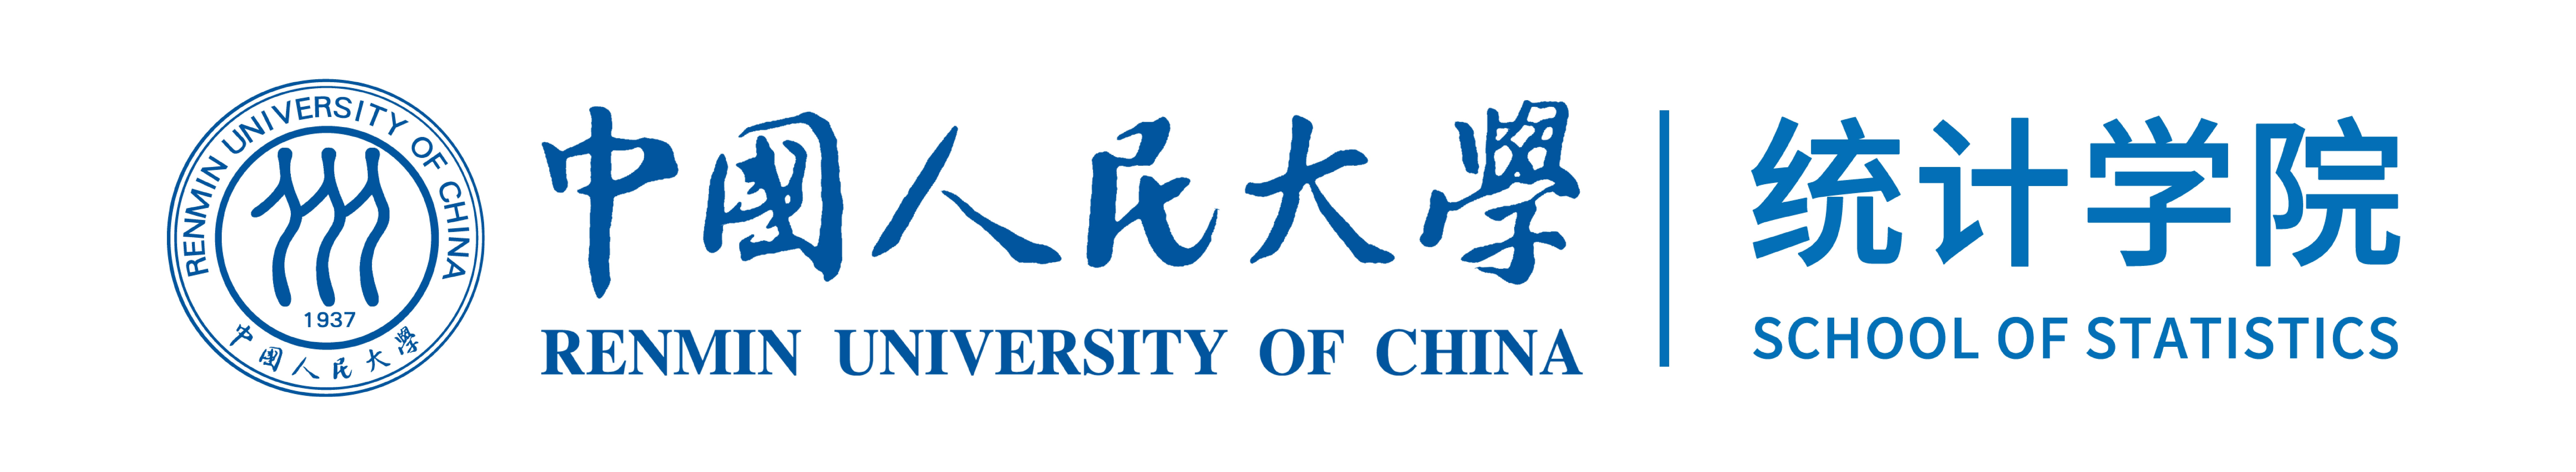 中国人民大学统计学院